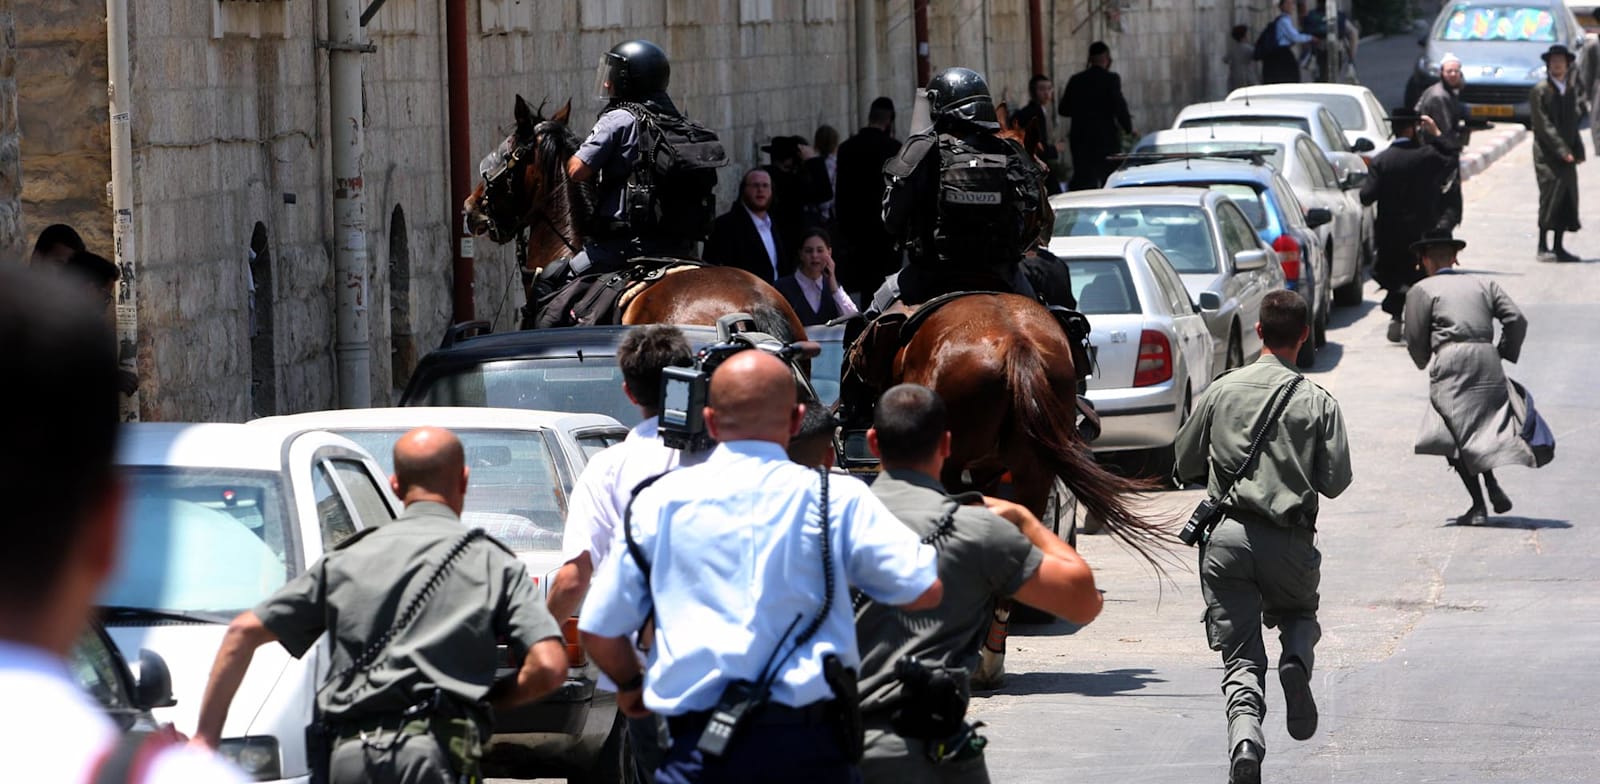 שוטרים בשכונת מאה שערים בירושלים / צילום: אוריה תדמור